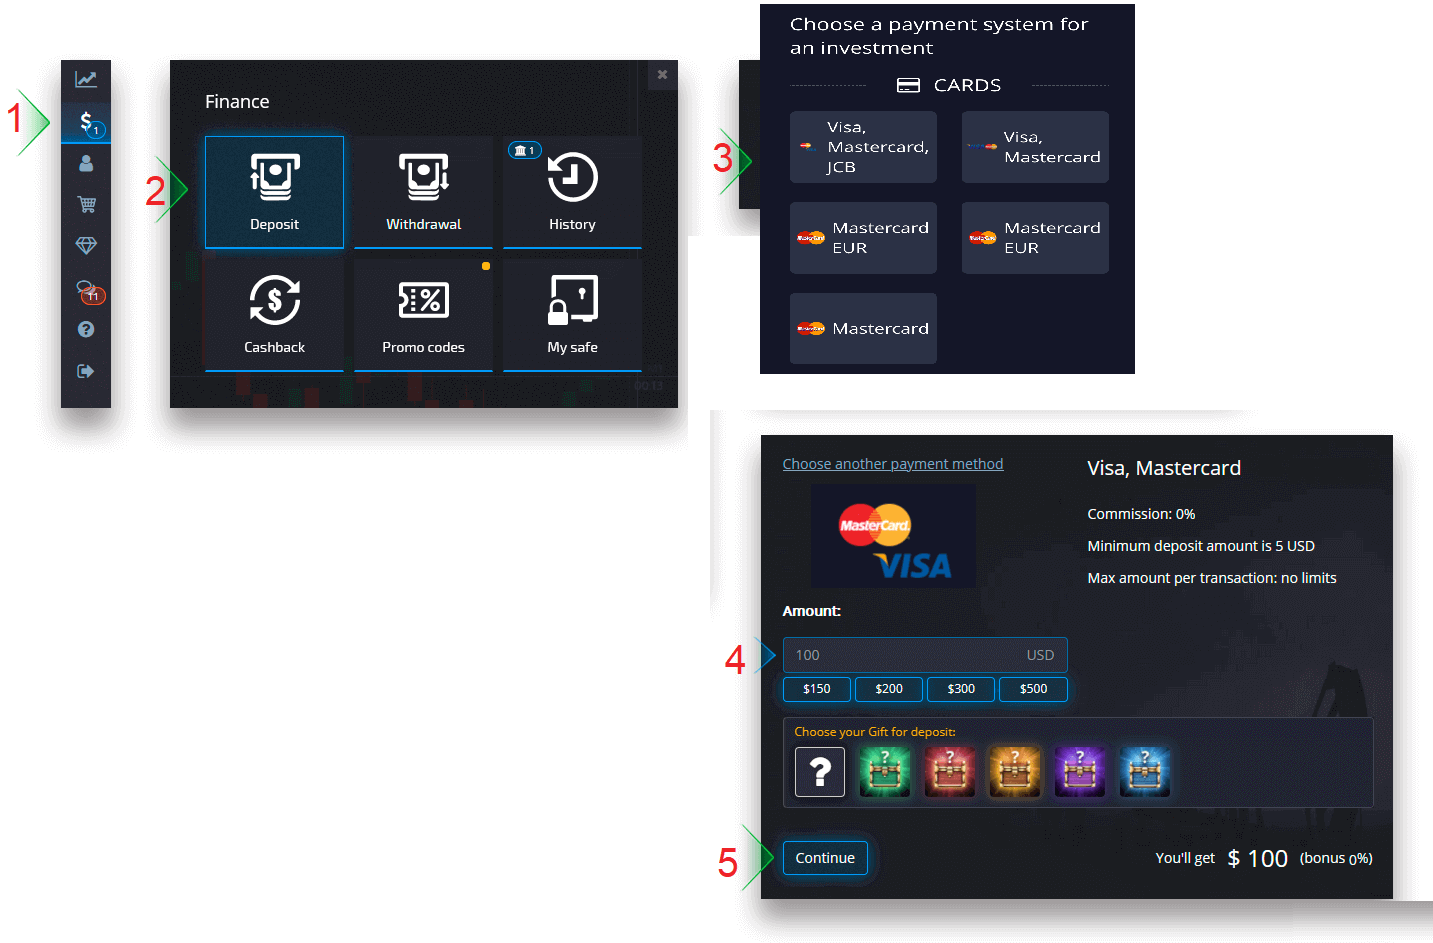 Pocket Option पर साइन अप और पैसे कैसे जमा करें